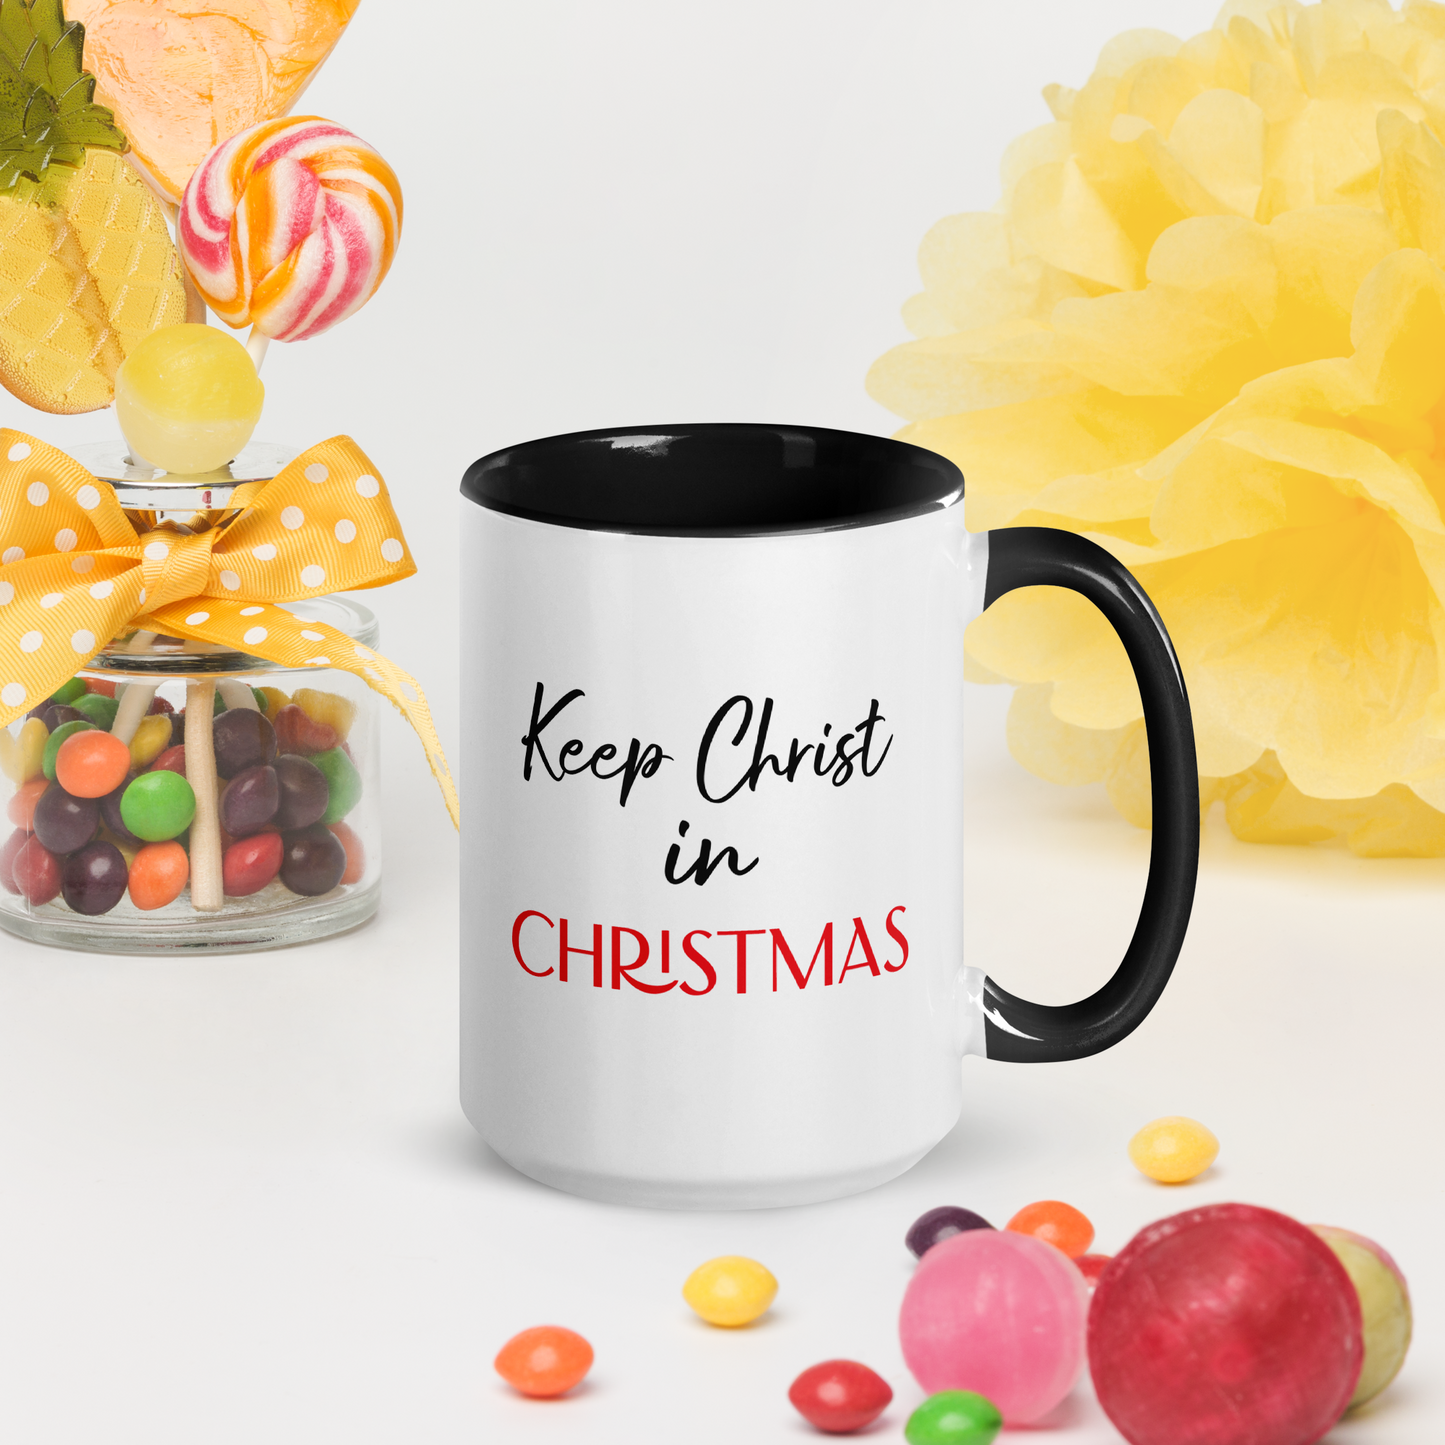 Keep Christ in Christmas Mug